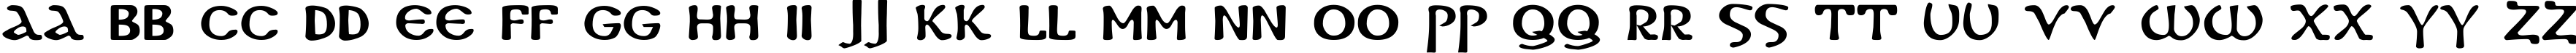 Пример написания английского алфавита шрифтом DS Coptic